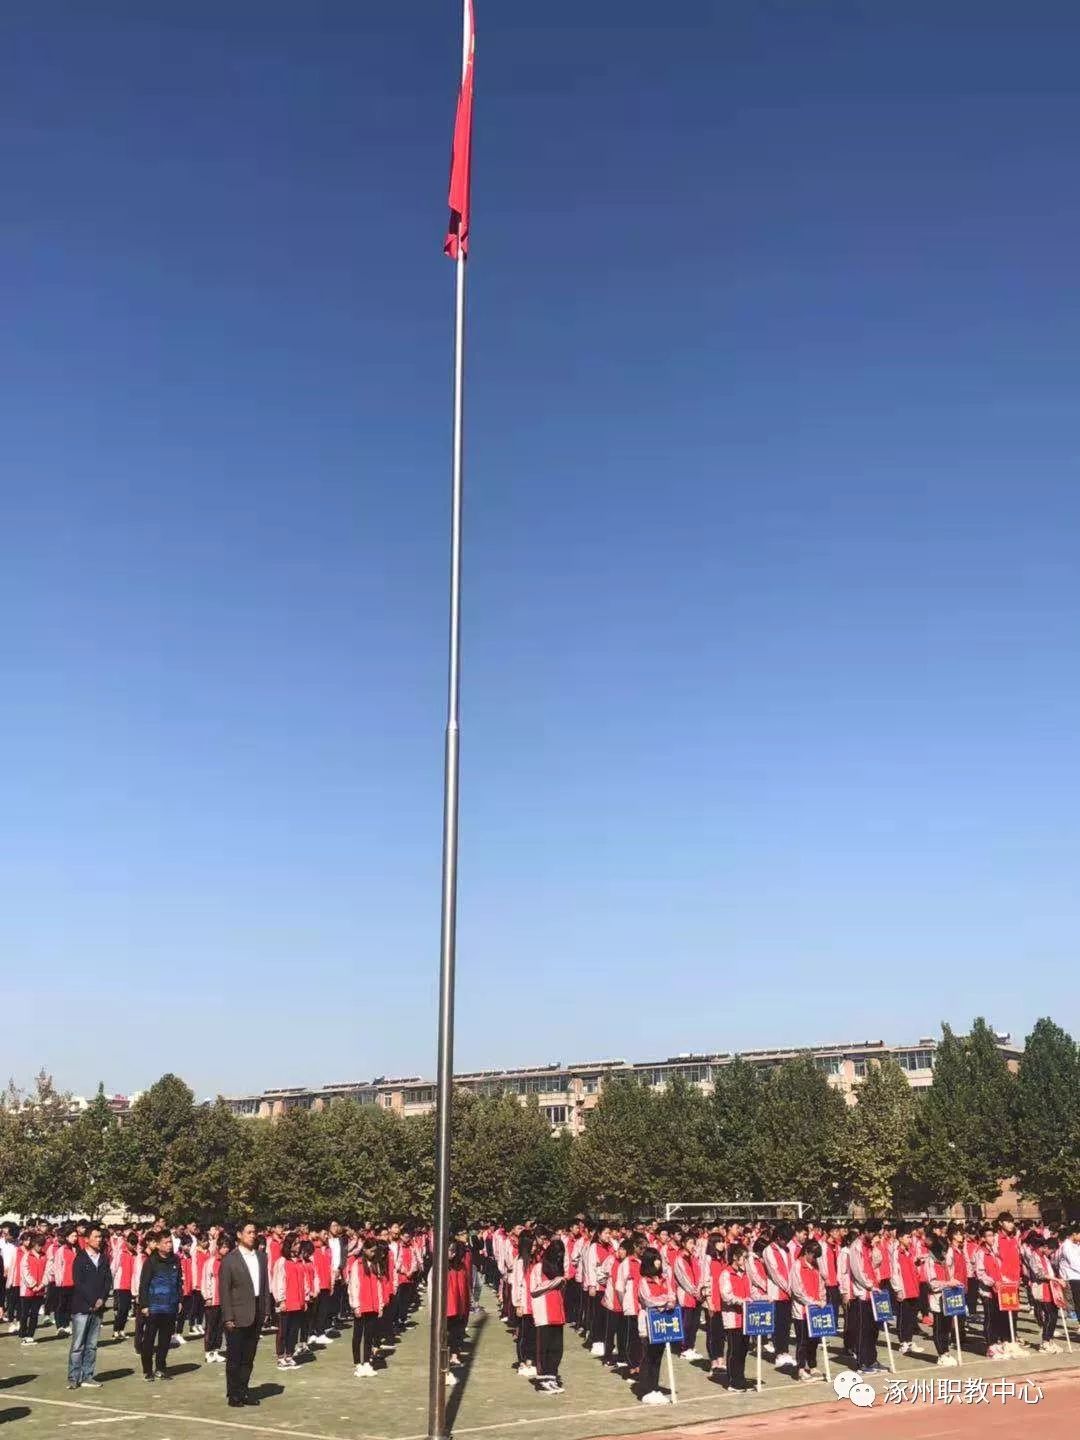 担任校国旗方队队长的17建筑二班董帅同学做了以《我爱你,中国!